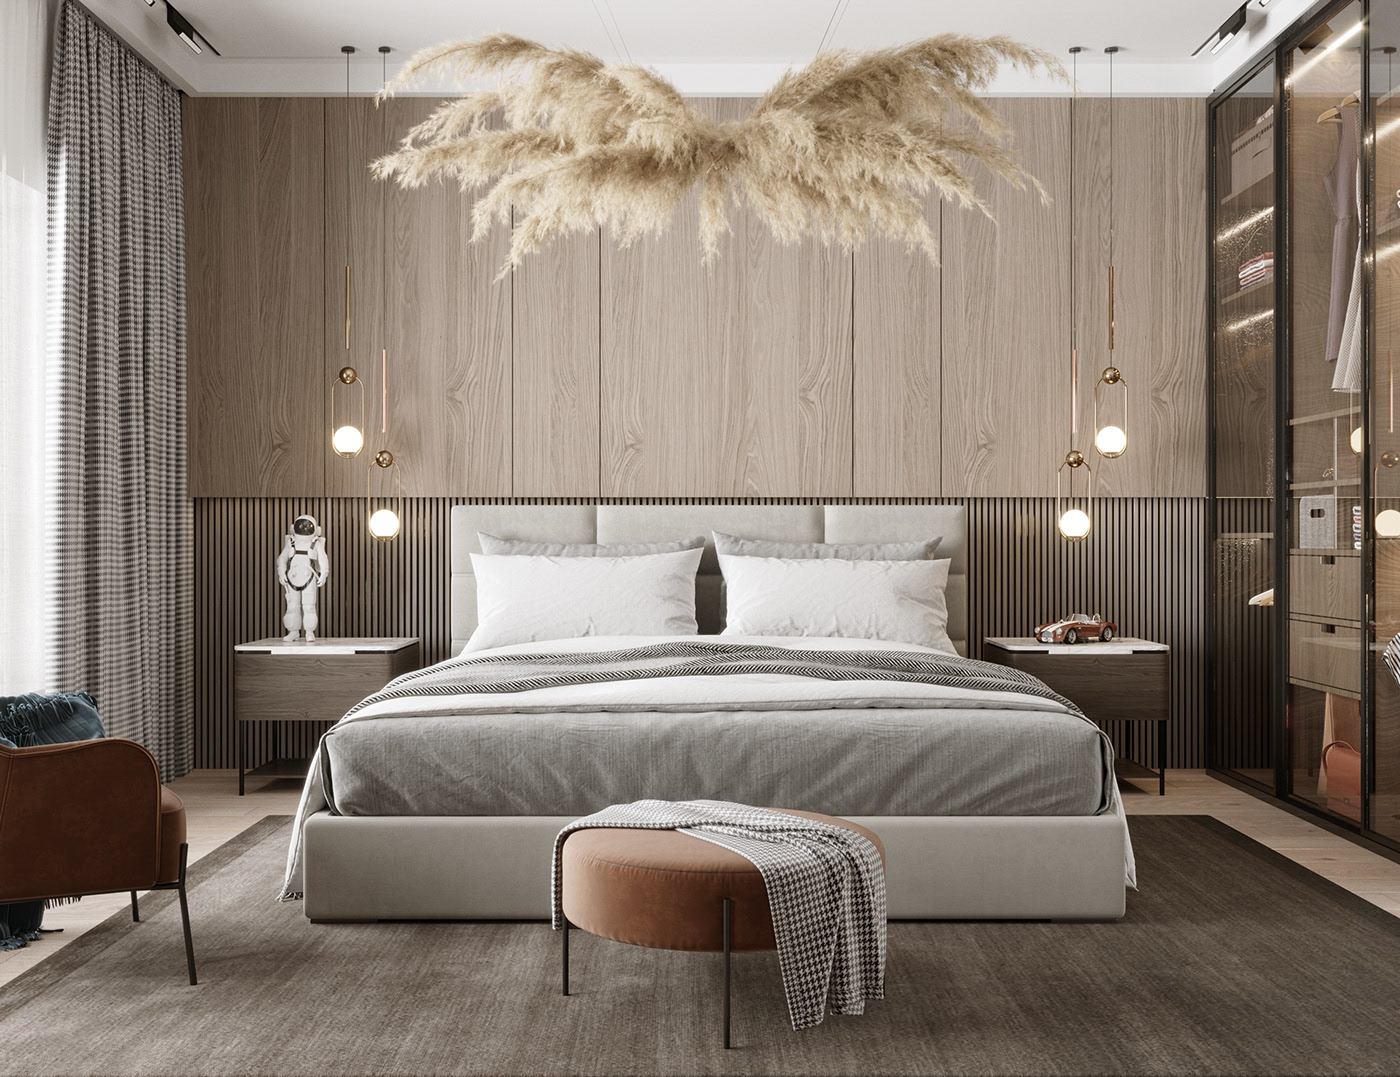 Knightsbridge Luxury Bedroom Furniture 1